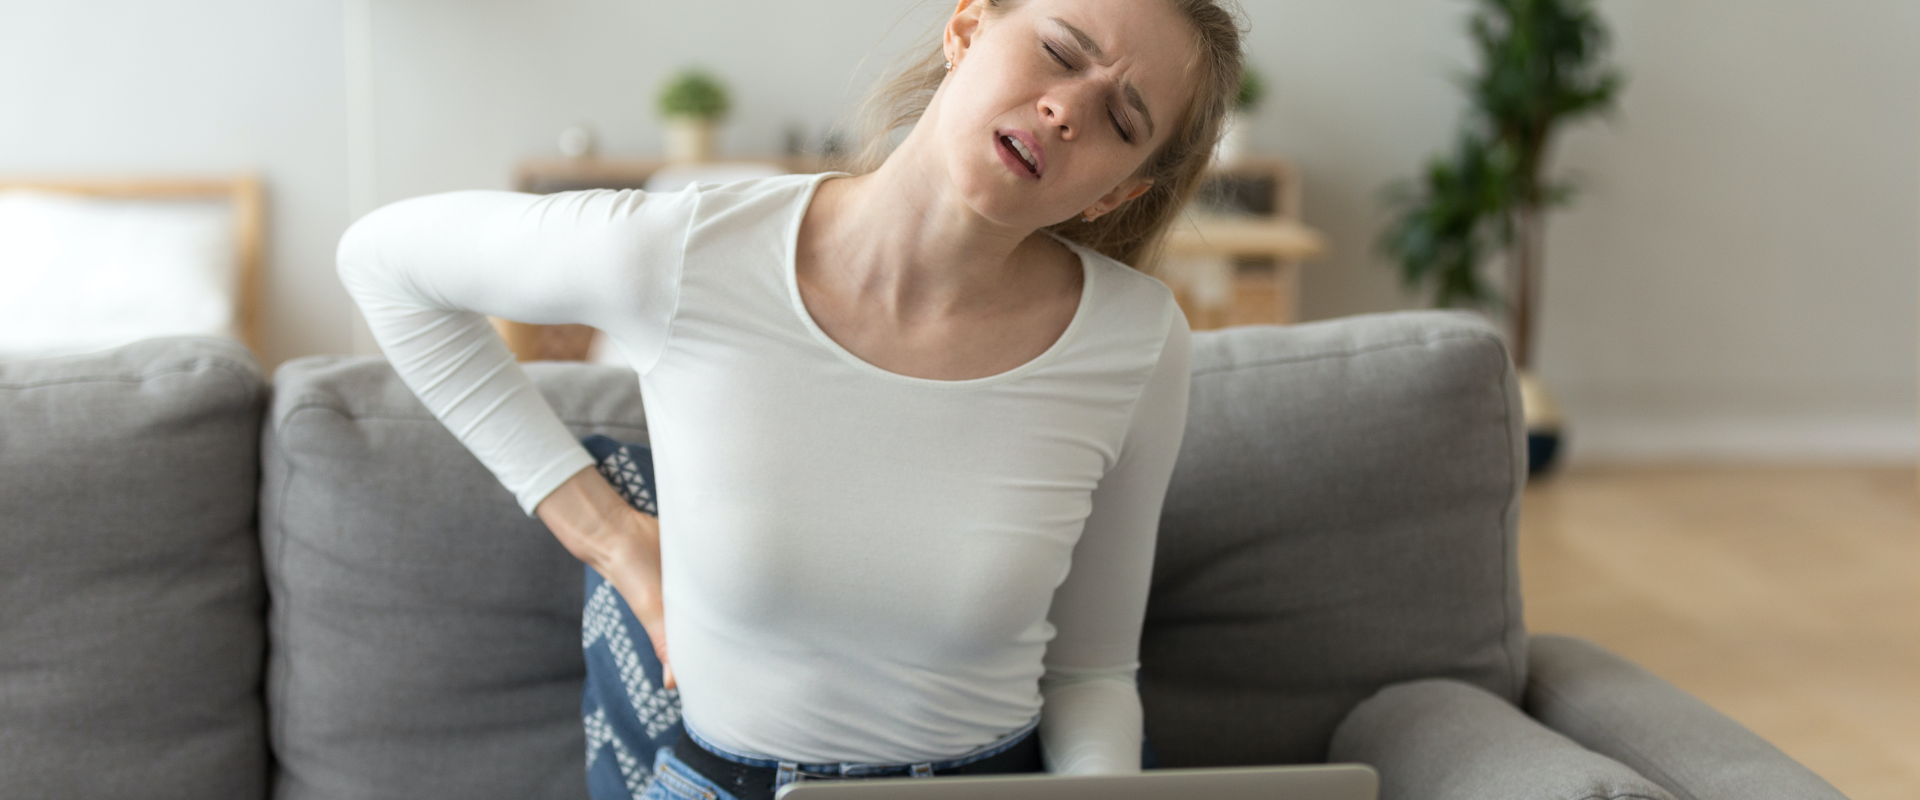 mulher sentada no sofá de frente a um computador com as mãos nas costas com expressão de dor